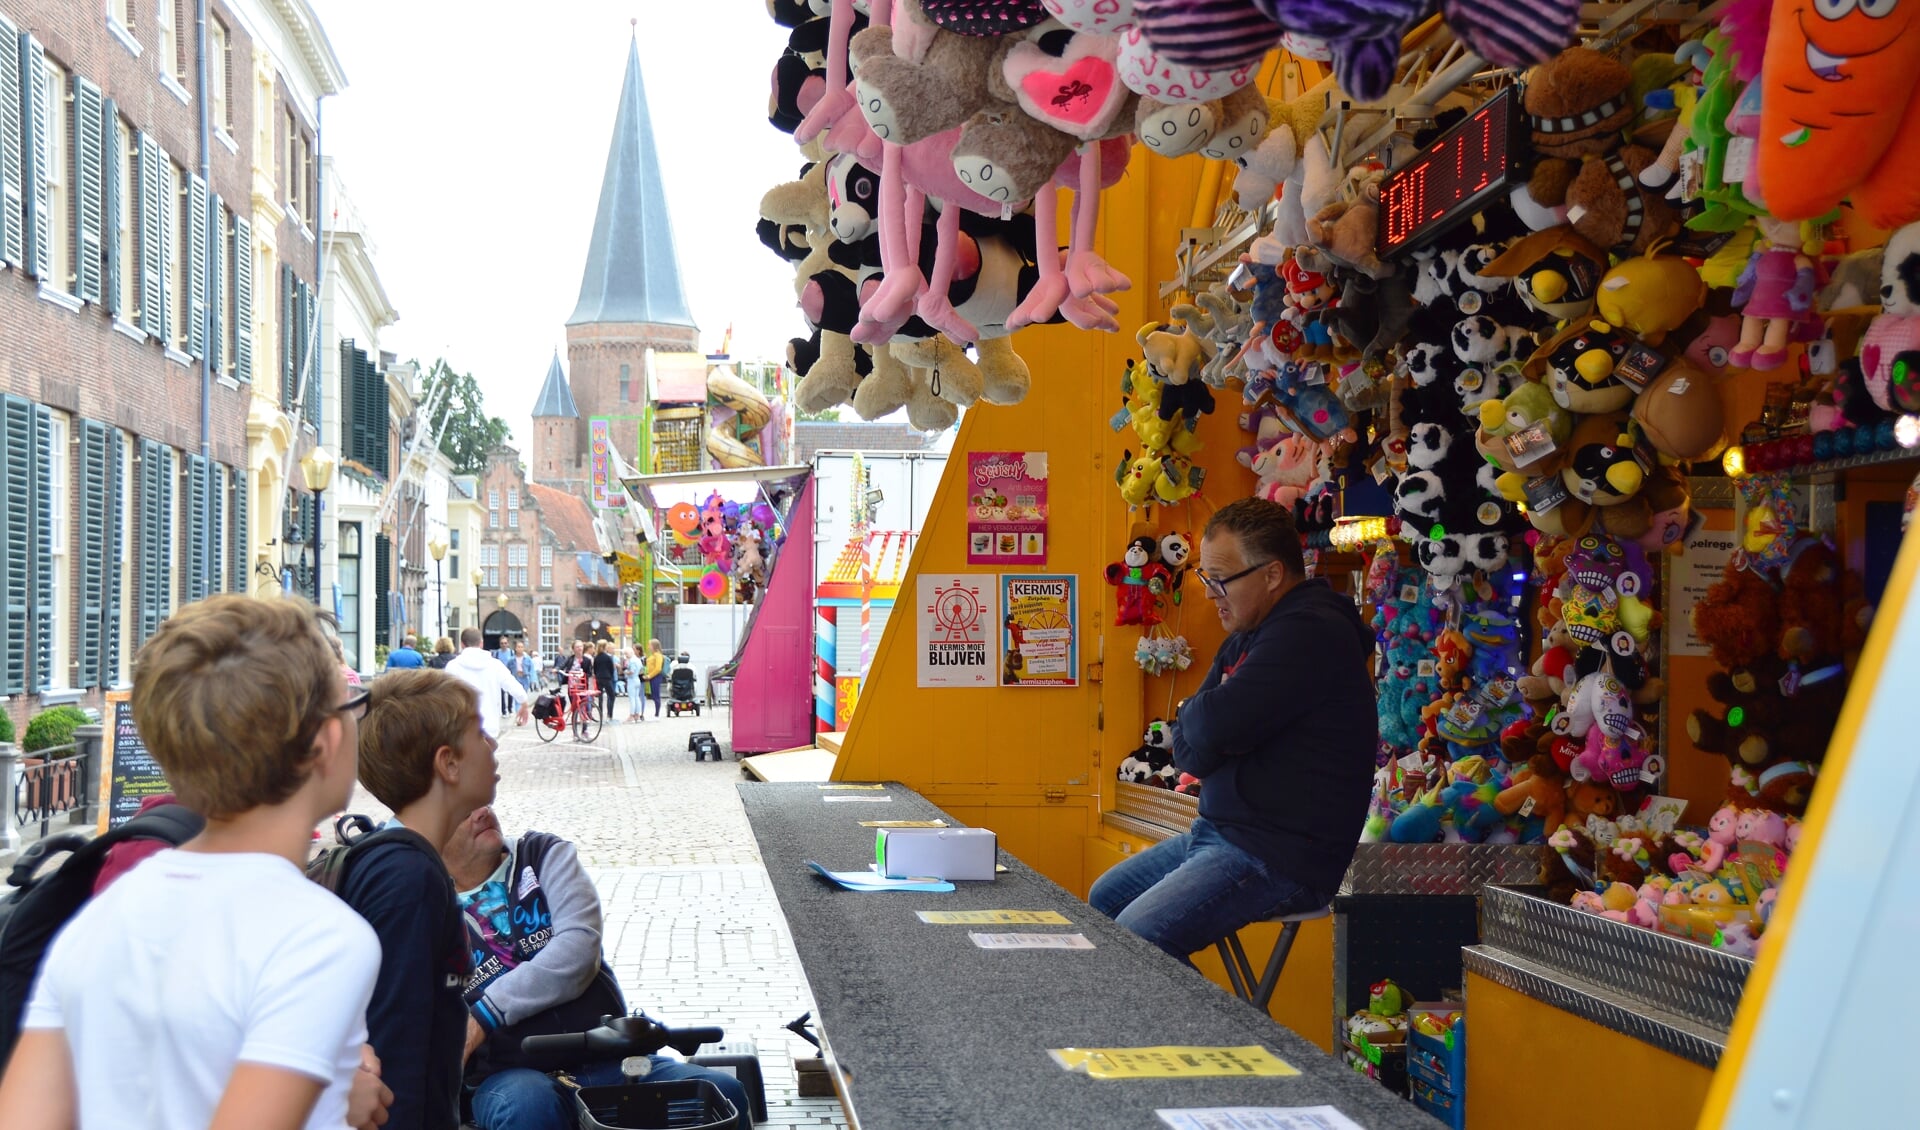 De Zutphense kermis is een jaarlijkse attractie in de binnenstad. Foto: Alize Hillebrink